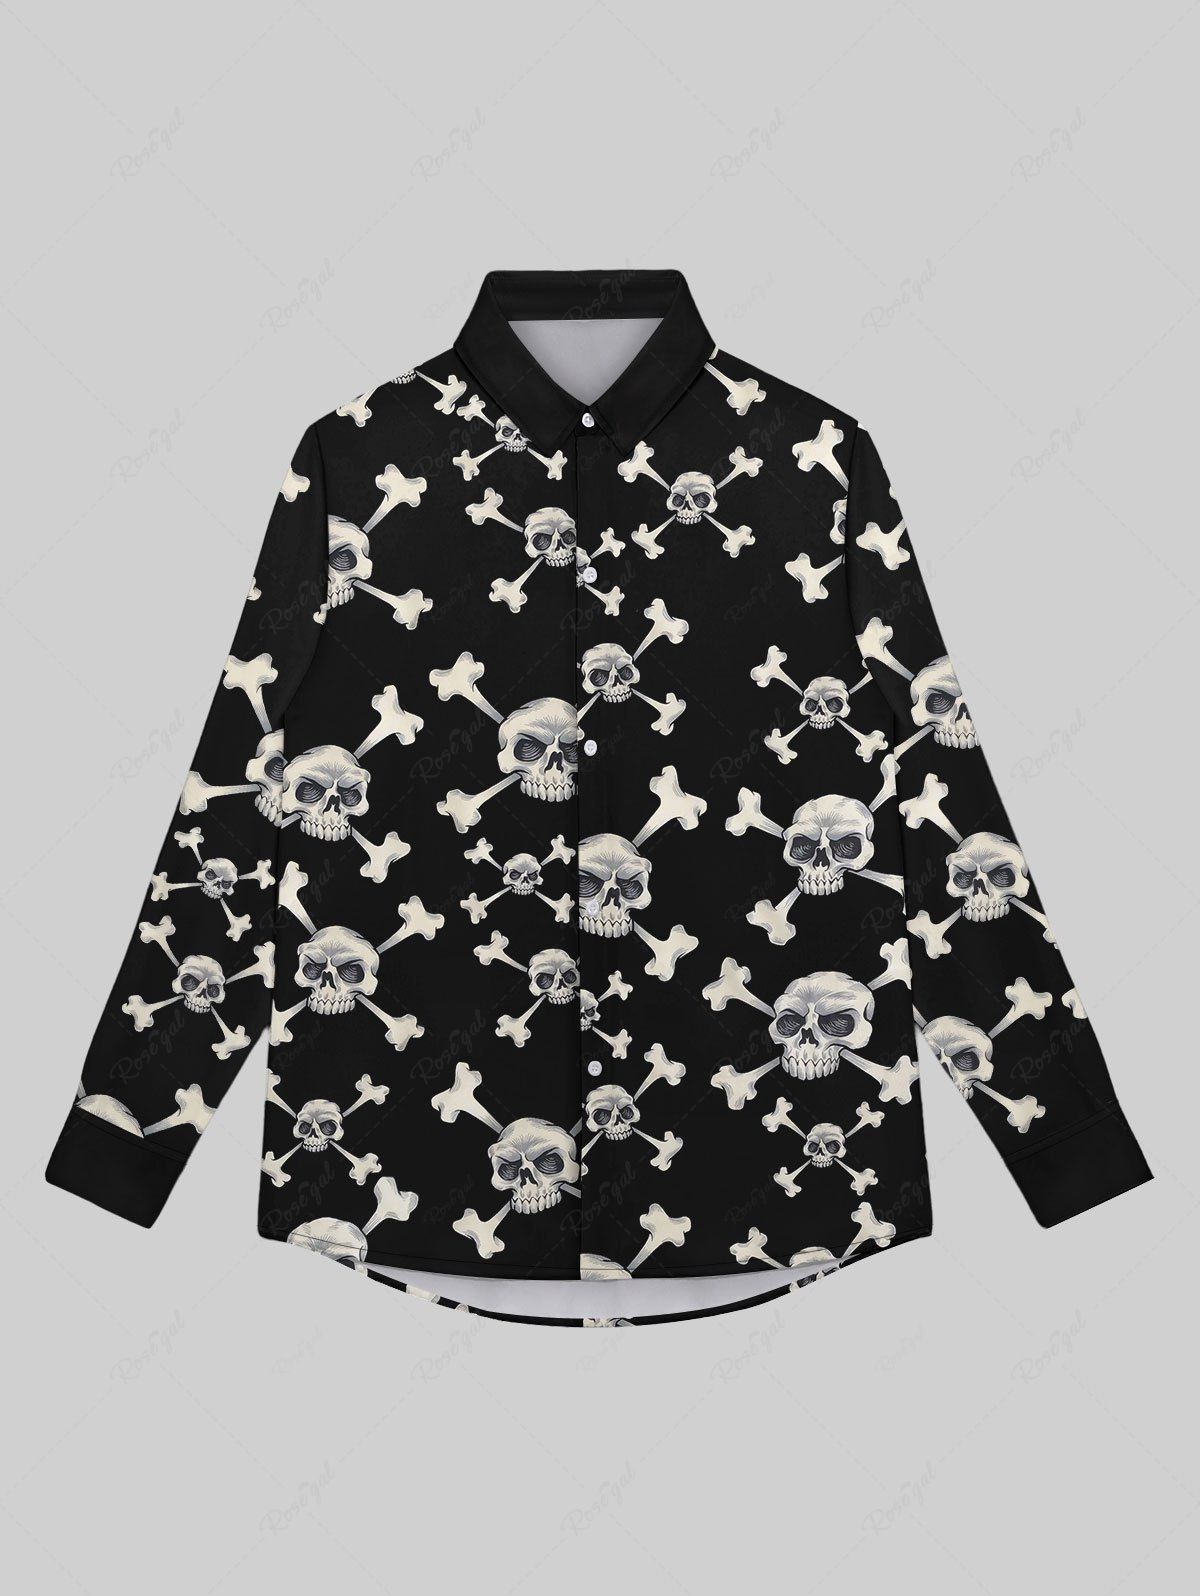 Fancy Gothic Skulls Skeleton Print Button Down Shirt For Men  